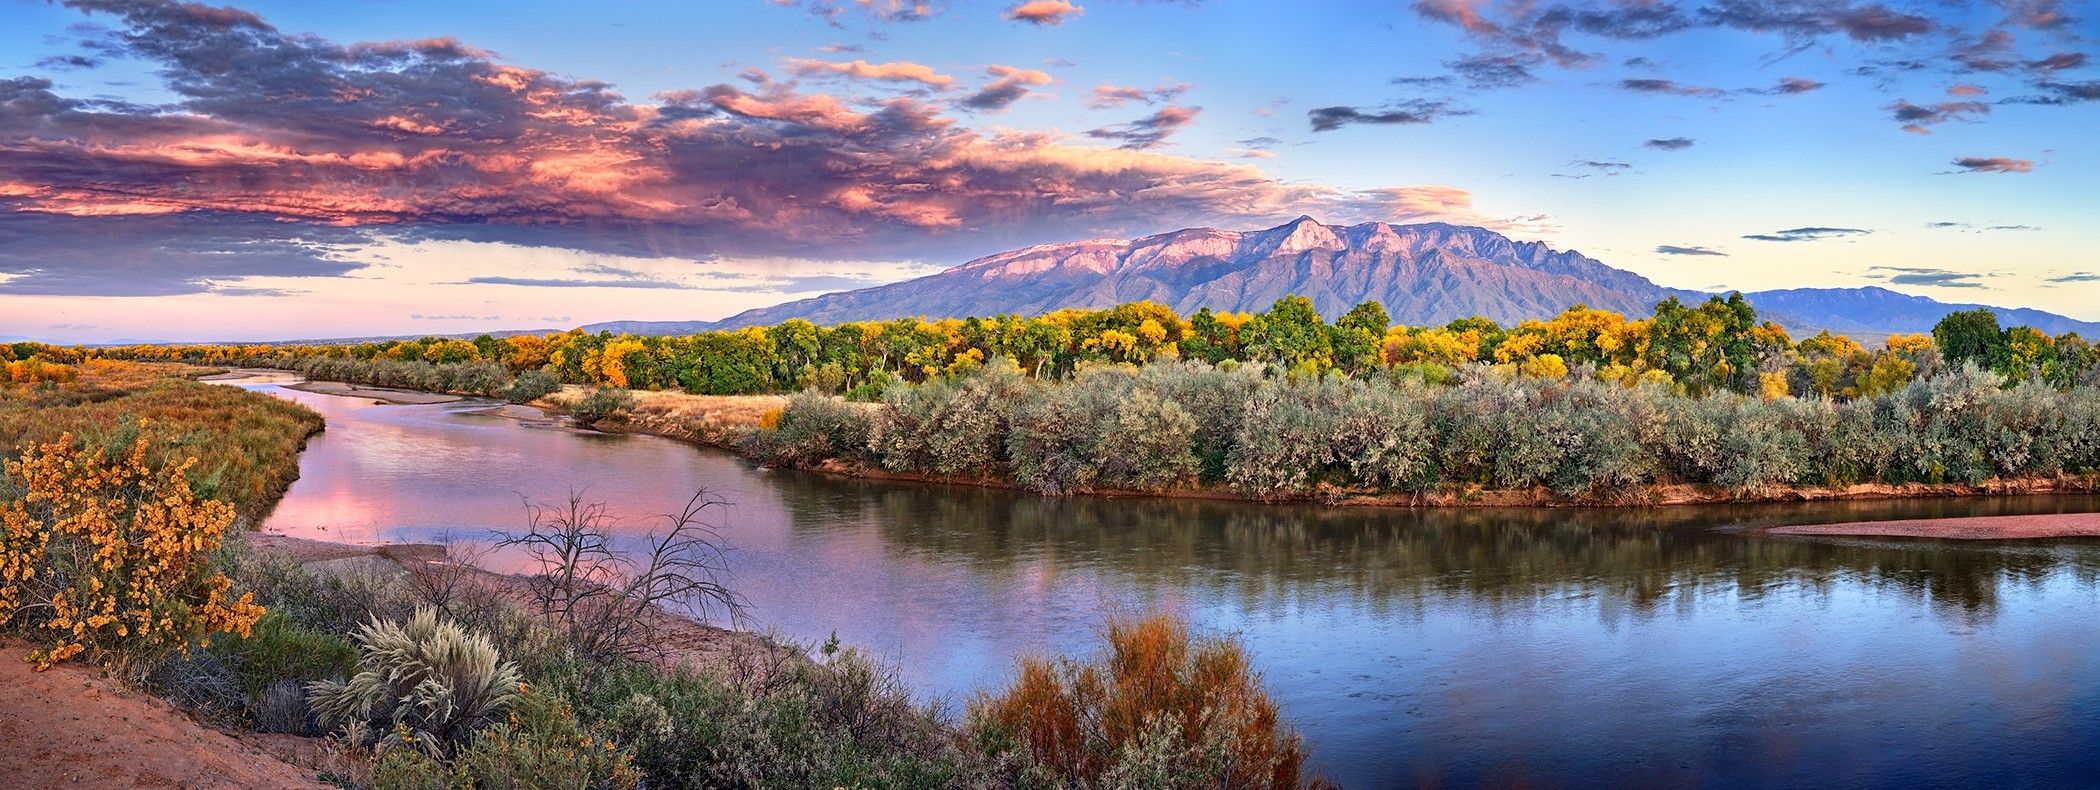 Beautiful New Mexico Rio Grande landscape